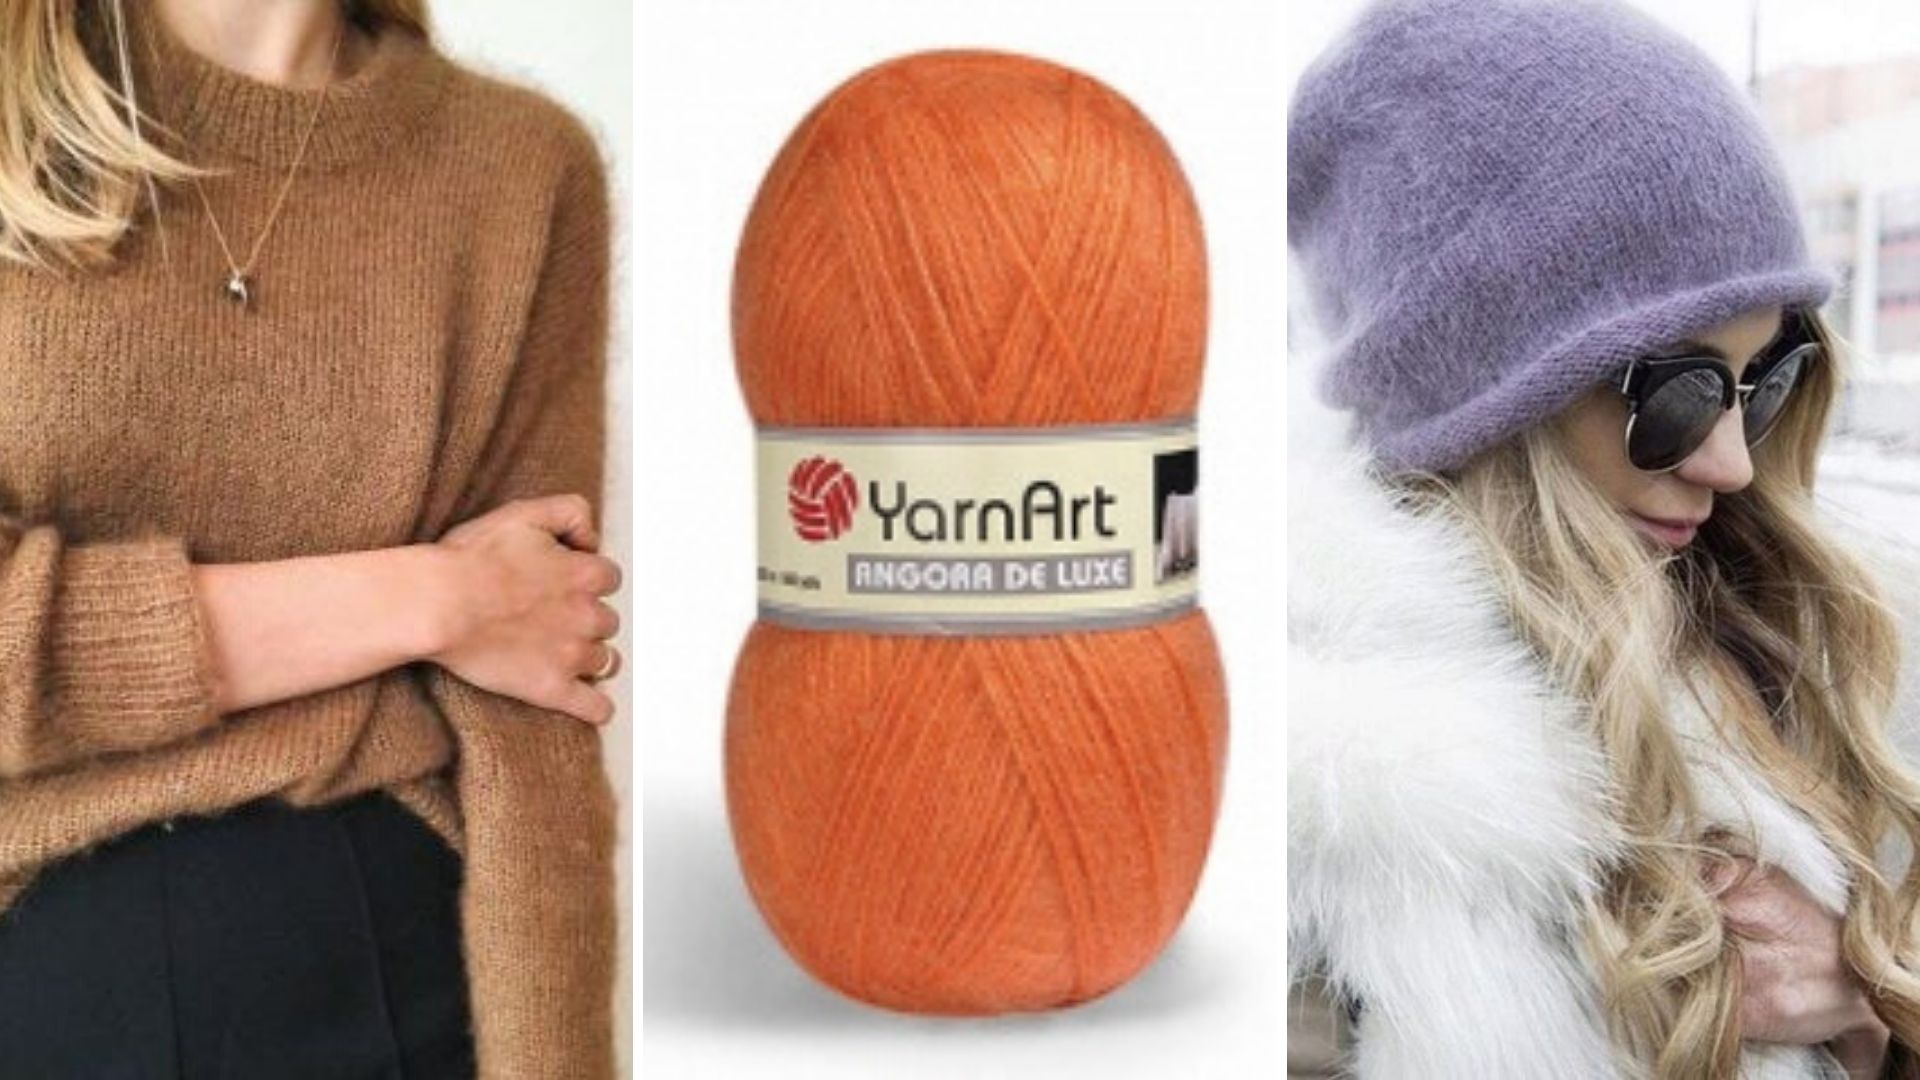 Как выбрать самую теплую пряжу для зимнего свитера шерсть, волокна, пряжи, состав, достаточно, вязания, чтобы, можно, поэтому, выглядят, тепло, образом, такой, входит, Иногда, теплой, время, очень, крючком, спицами